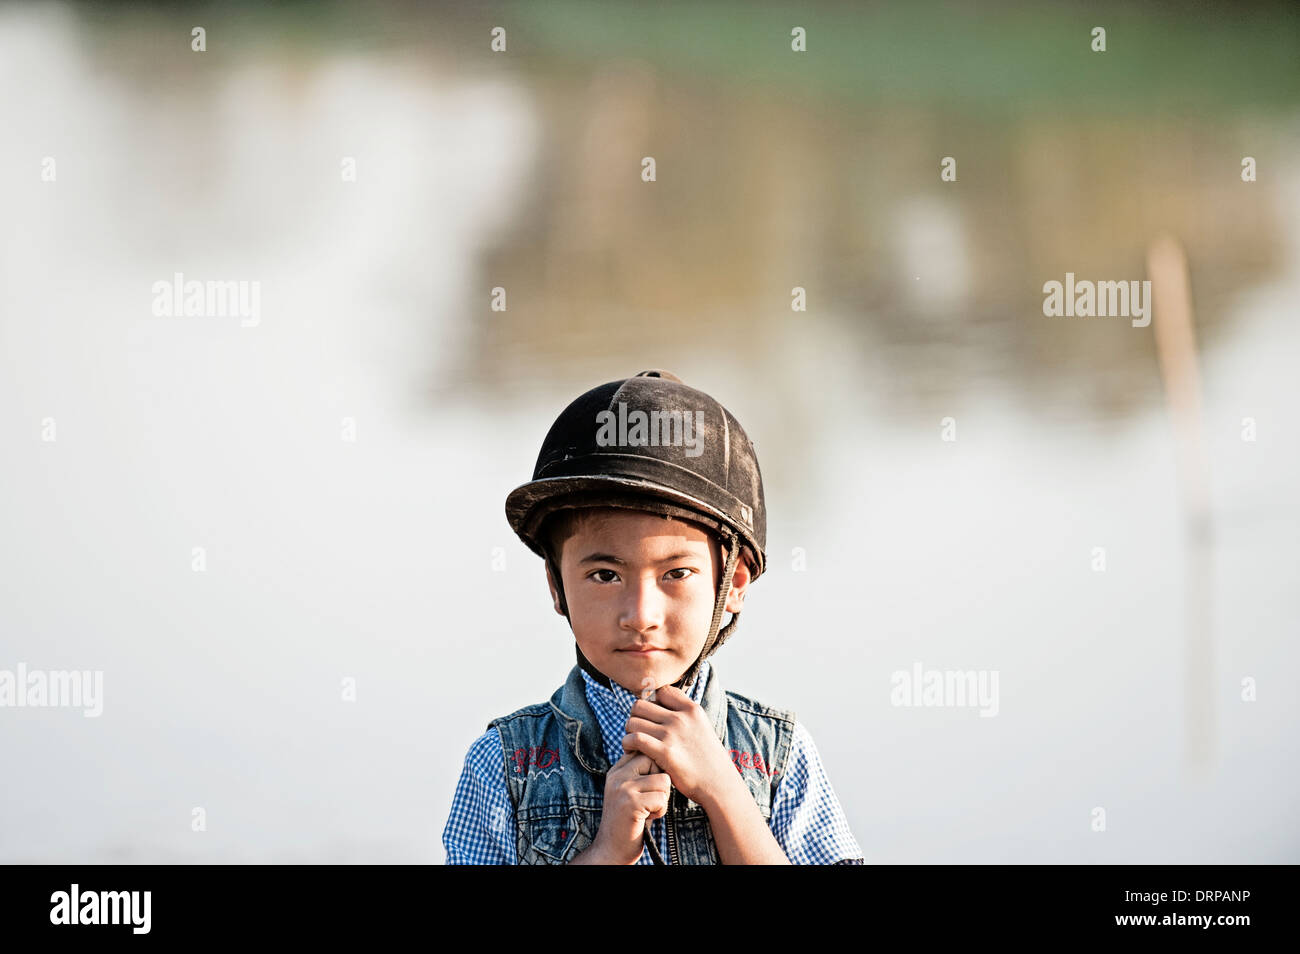 Jeune garçon asiatique porte un chapeau d'équitation prêt à monter sur son poney, debout regardant et souriant dans l'appareil photo Banque D'Images